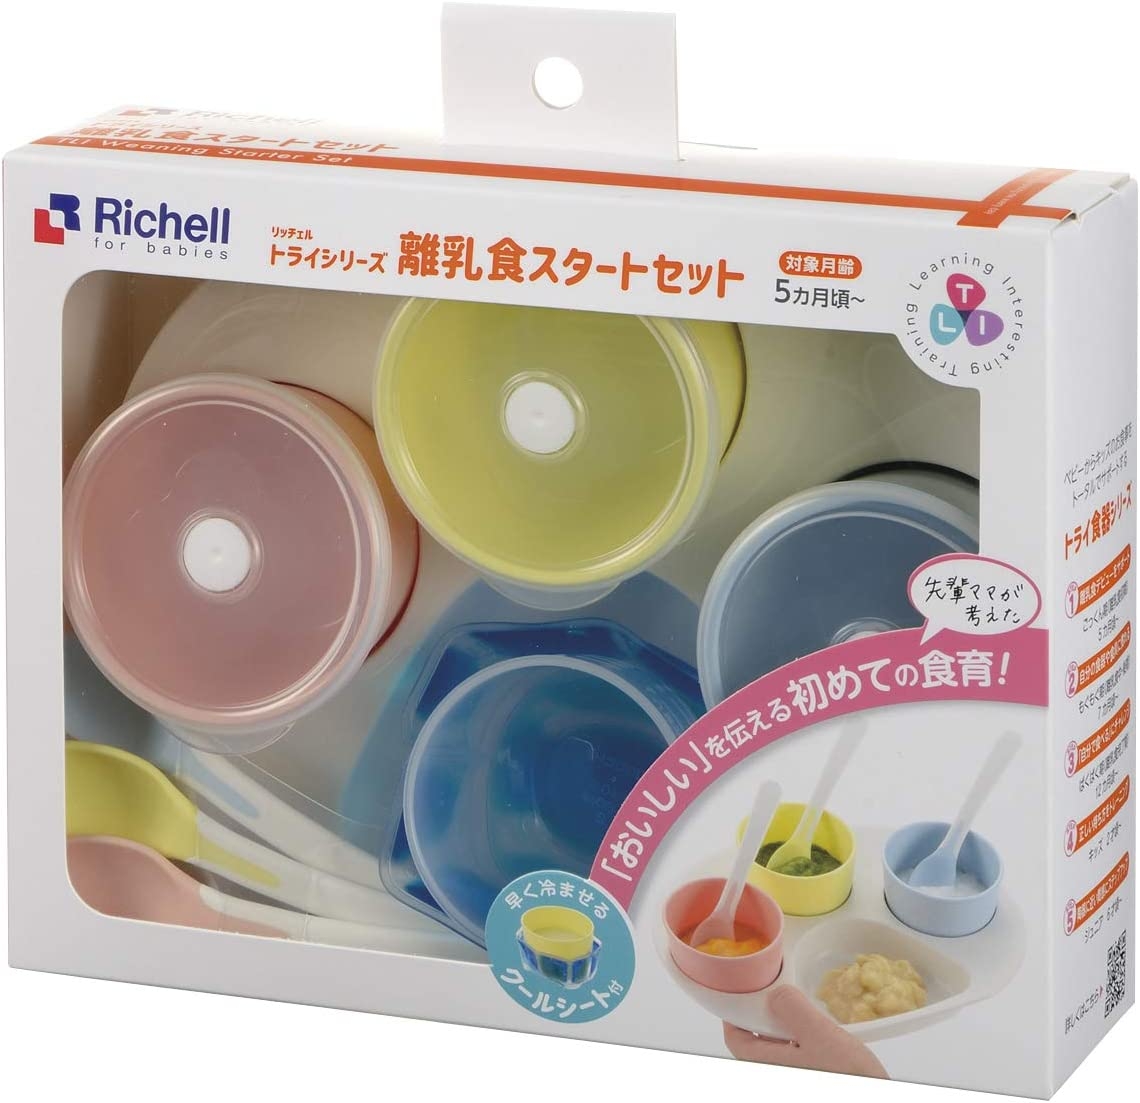 Richell(リッチェル) トライシリーズ 離乳食スタートセットの商品画像3 